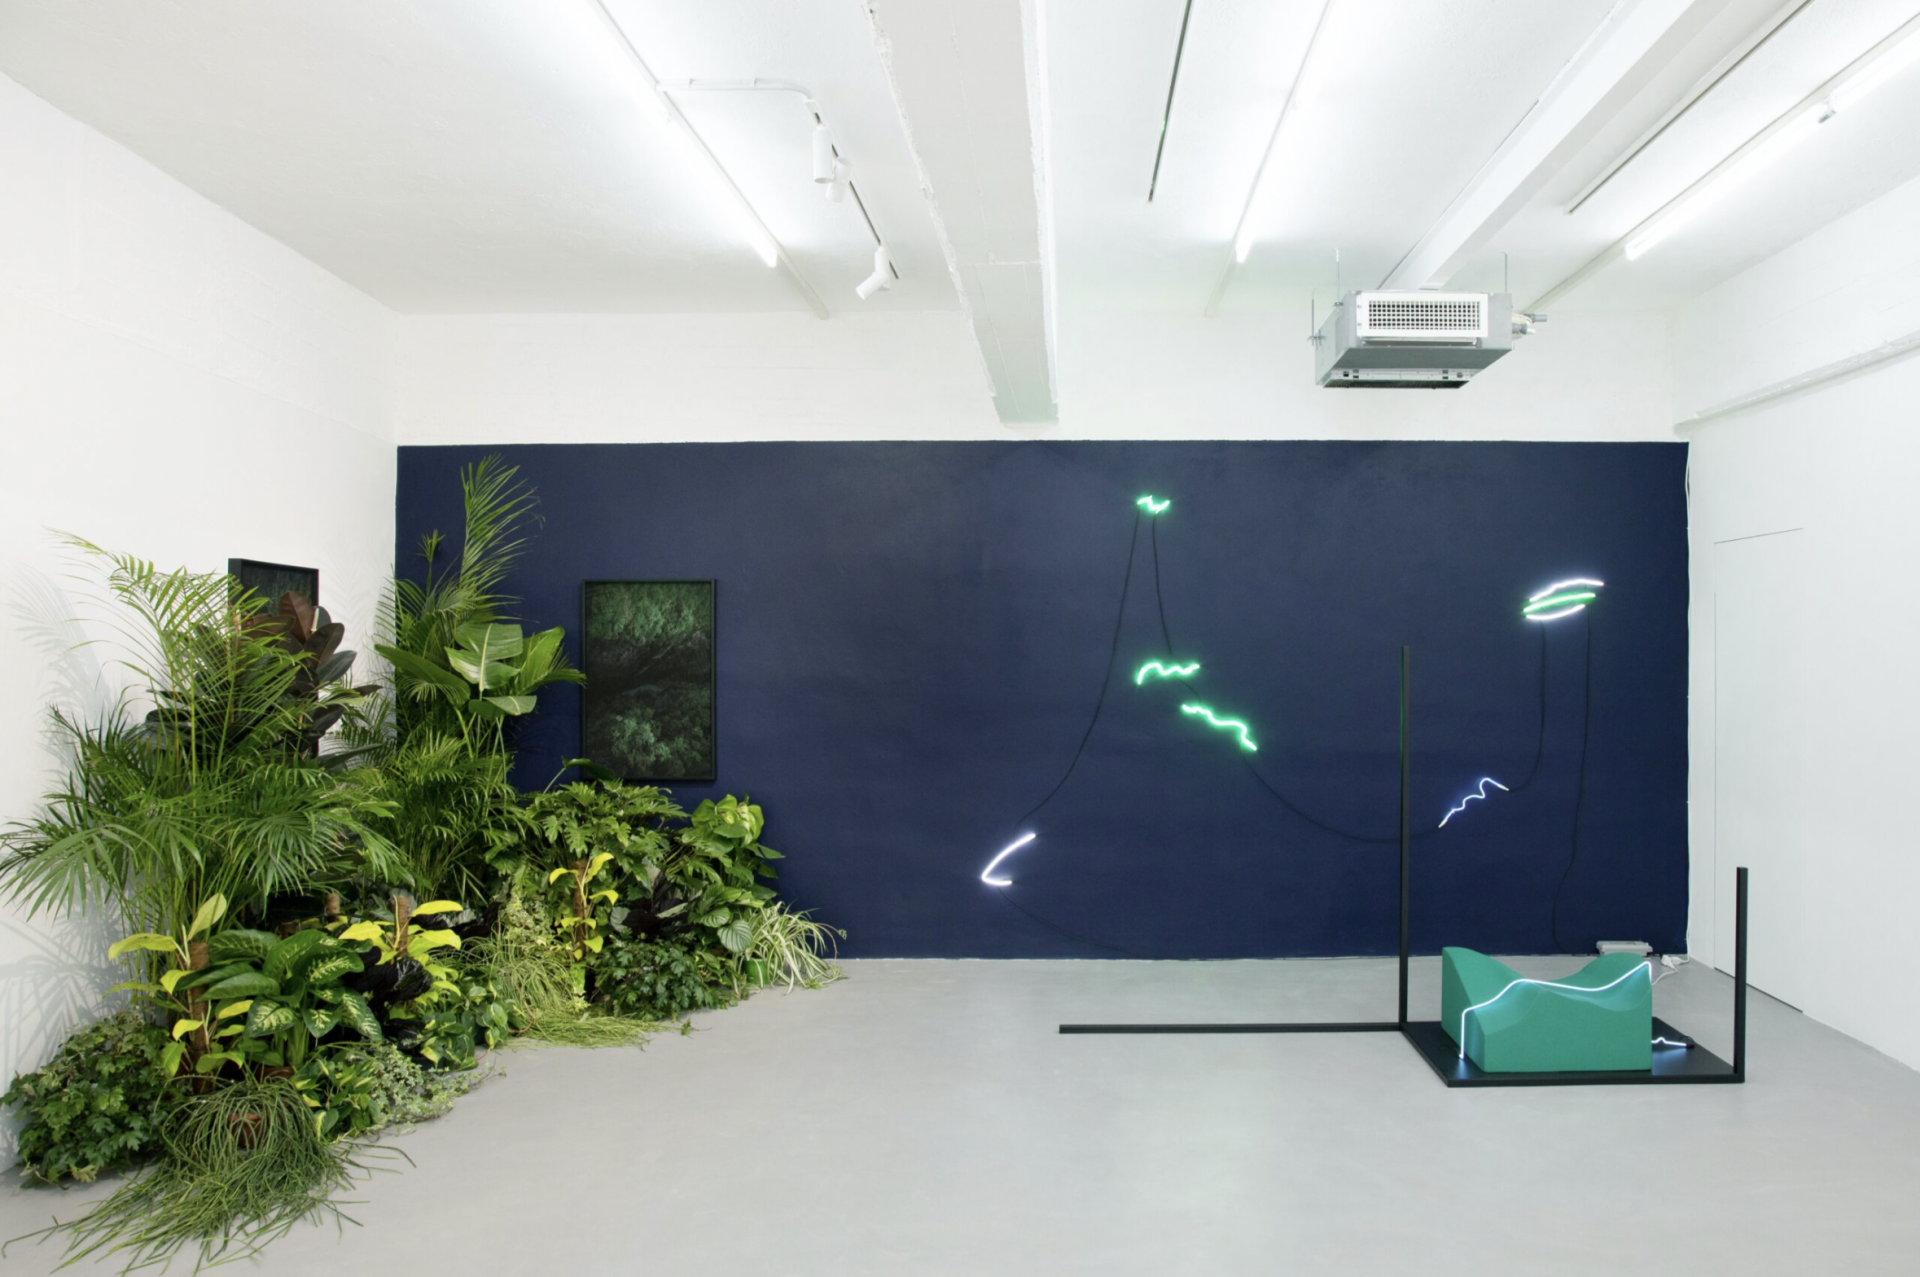 Installation view, Silvia Mariotti, Zeitgeber (donatore di tempo), ArtNoble gallery, Milano, 2021